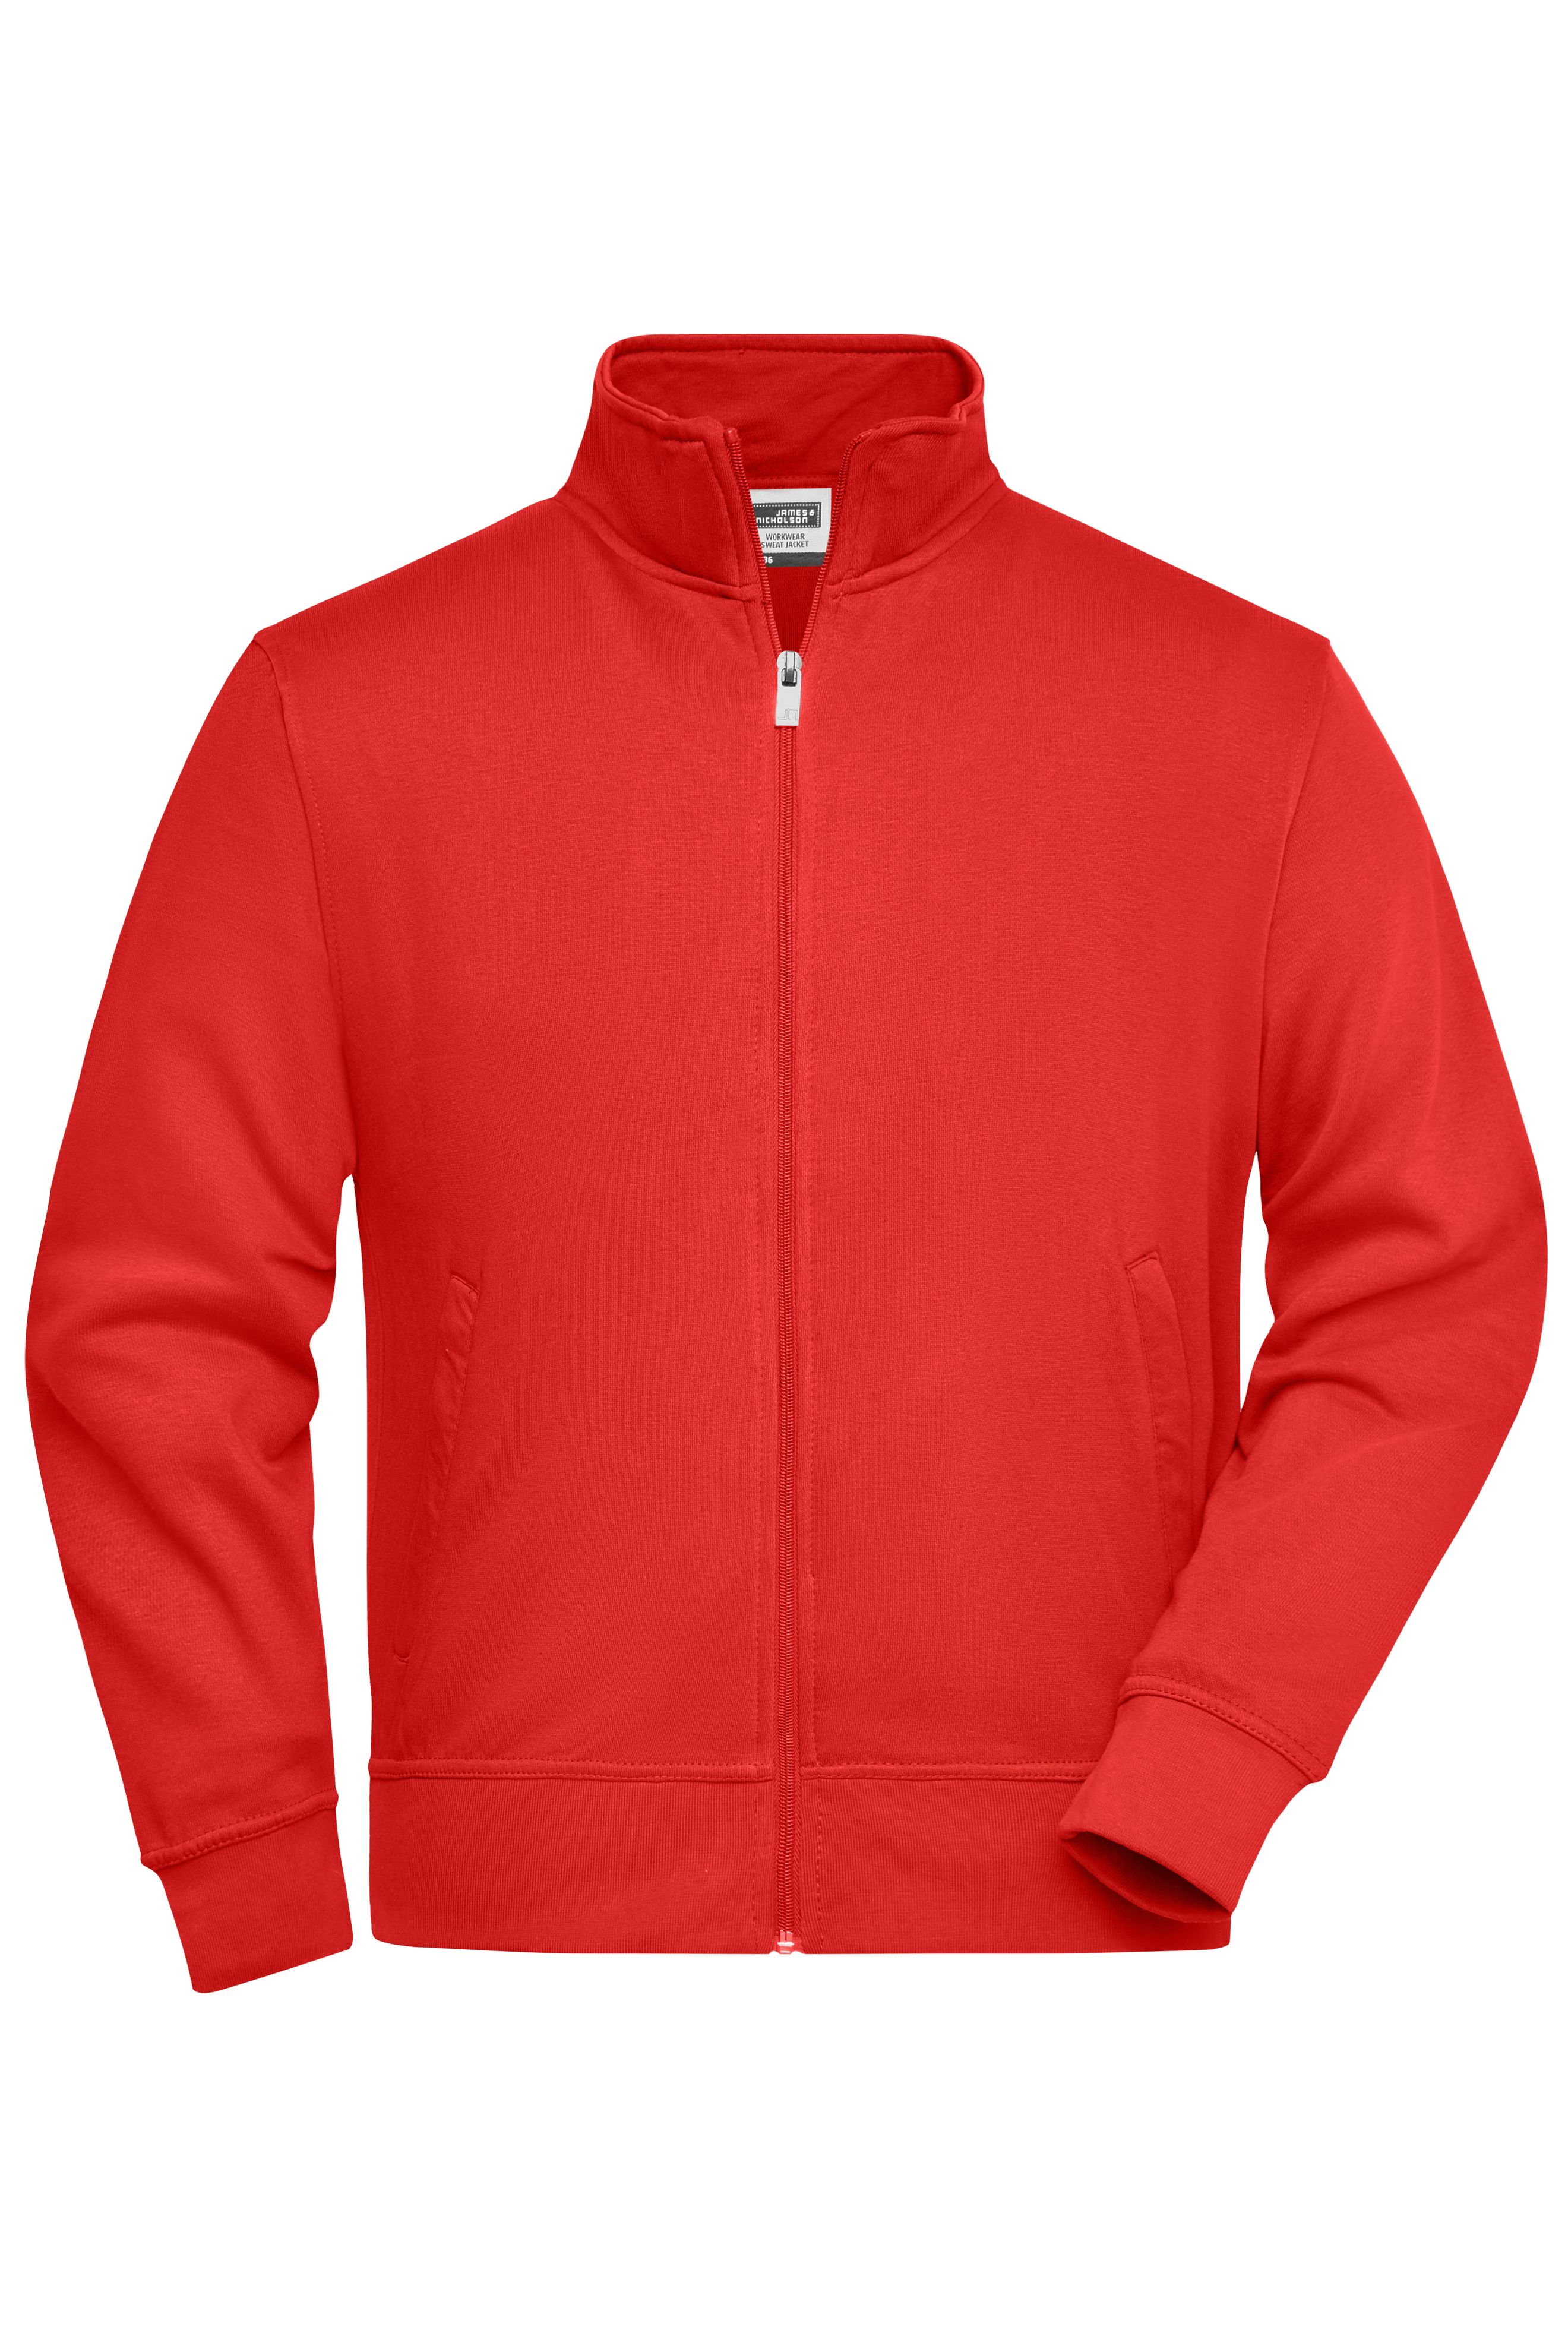 Workwear Sweat Jacket JN836 Sweat-Jacke mit Stehkragen und Reißverschluss